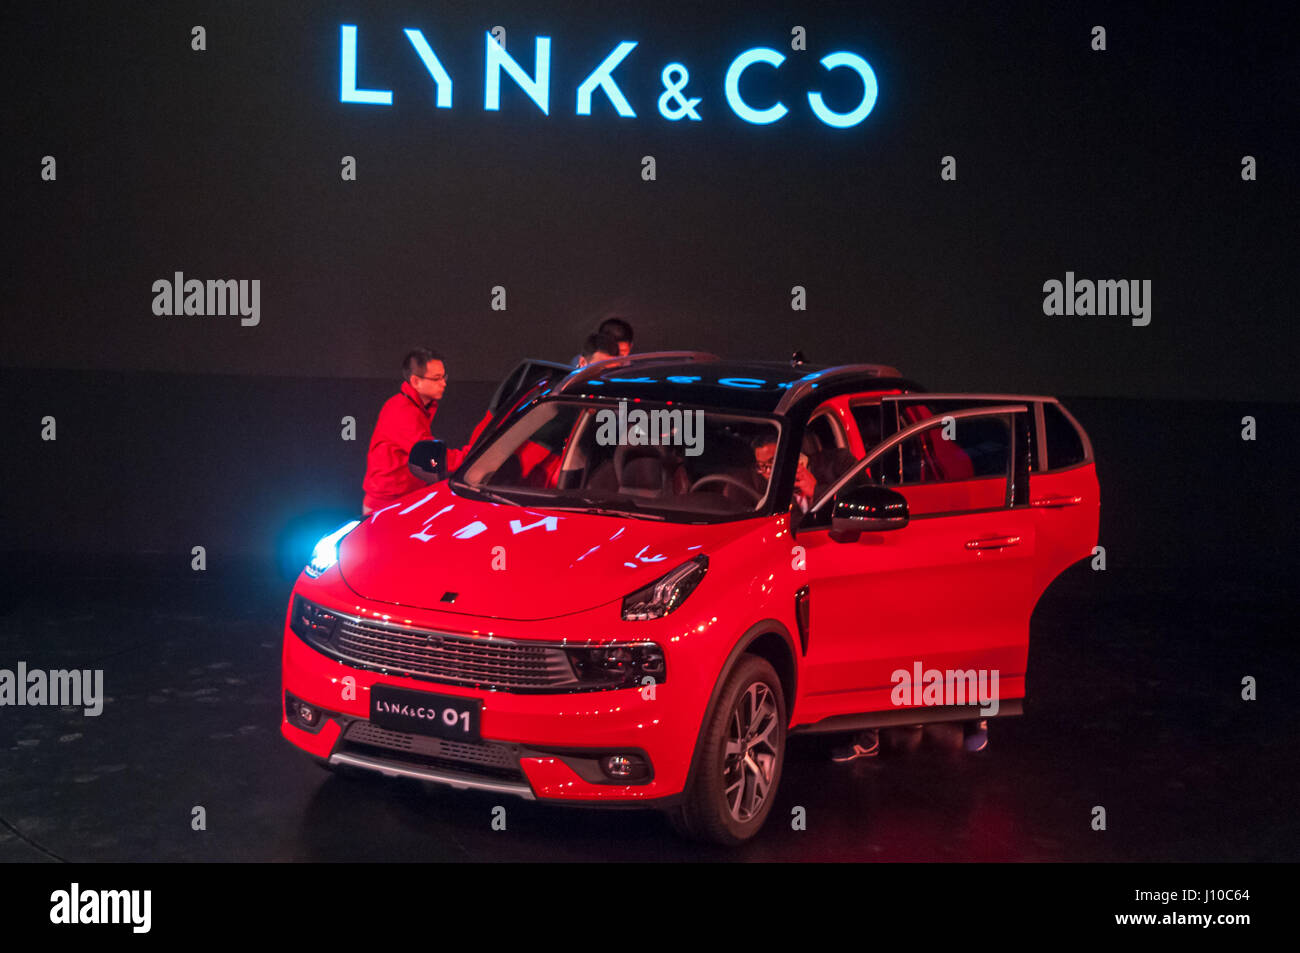 Shanghai, Chine. 16 avril, 2017. LYNK & CO 01 voiture de production en Chine lancement de la marque à Shanghai Banque D'Images